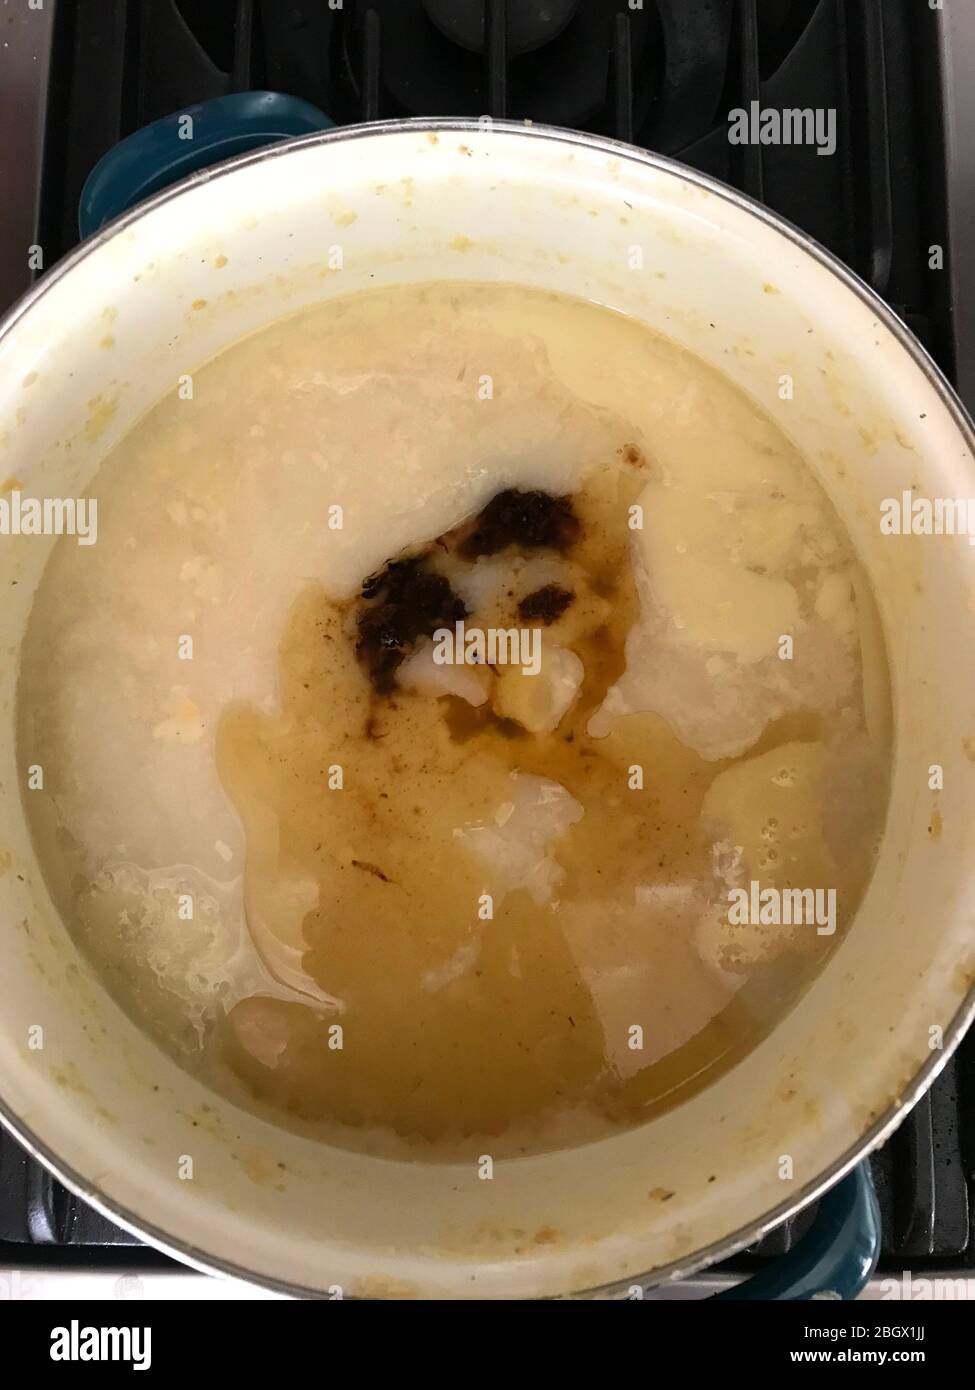 La cara de un gato parece aparecer en una olla de sopa hirviendo en la estufa. Foto de stock